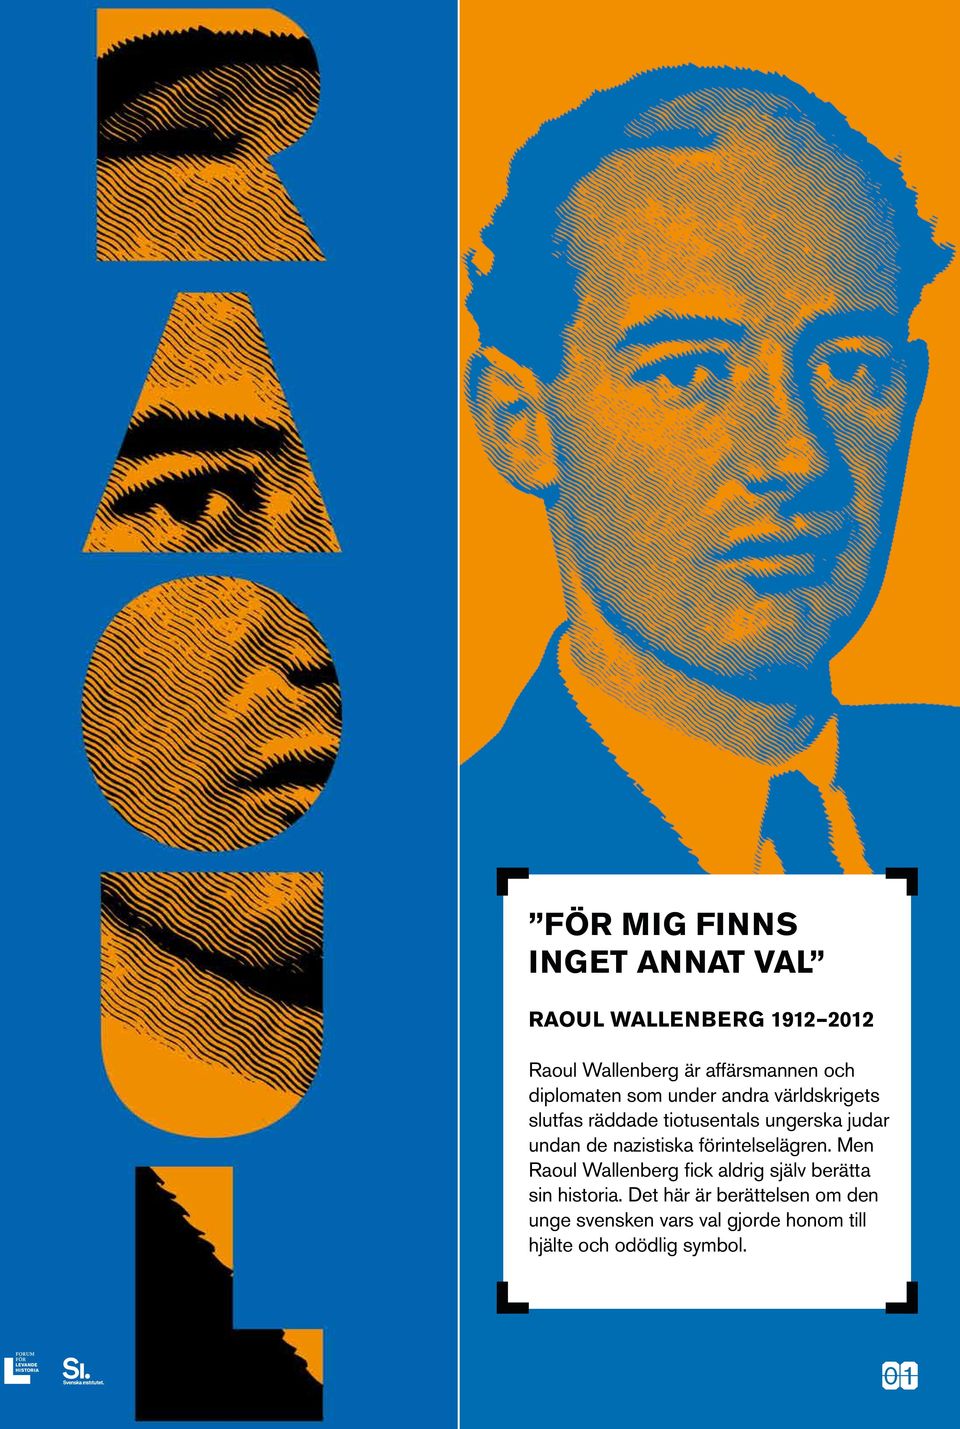 nazistiska förintelselägren. Men Raoul Wallenberg fick aldrig själv berätta sin historia.